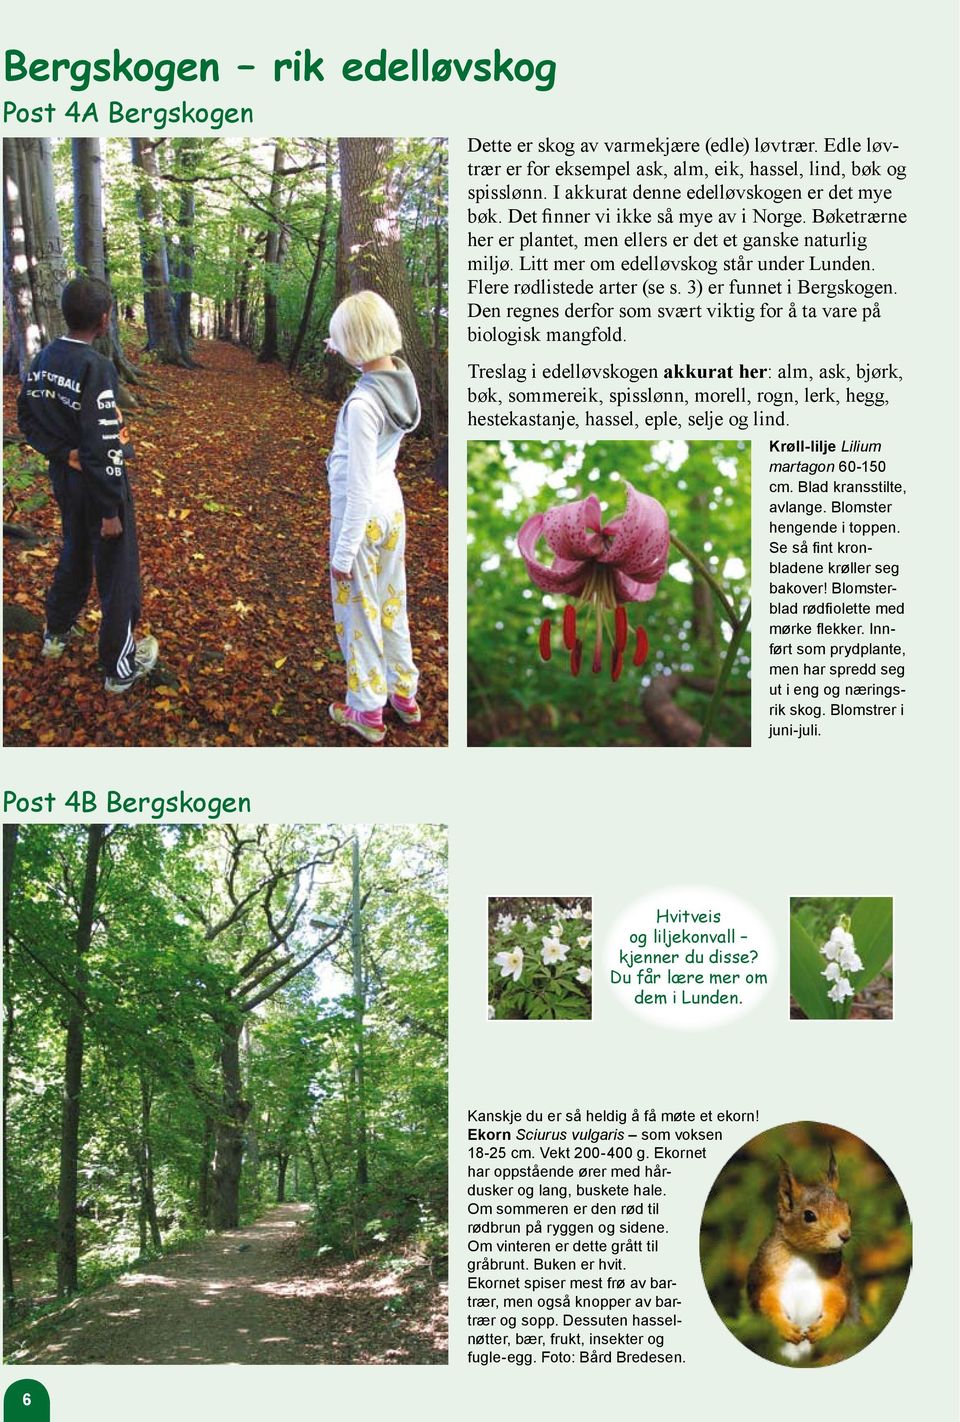 Flere rødlistede arter (se s. 3) er funnet i Bergskogen. Den regnes derfor som svært viktig for å ta vare på biologisk mangfold.